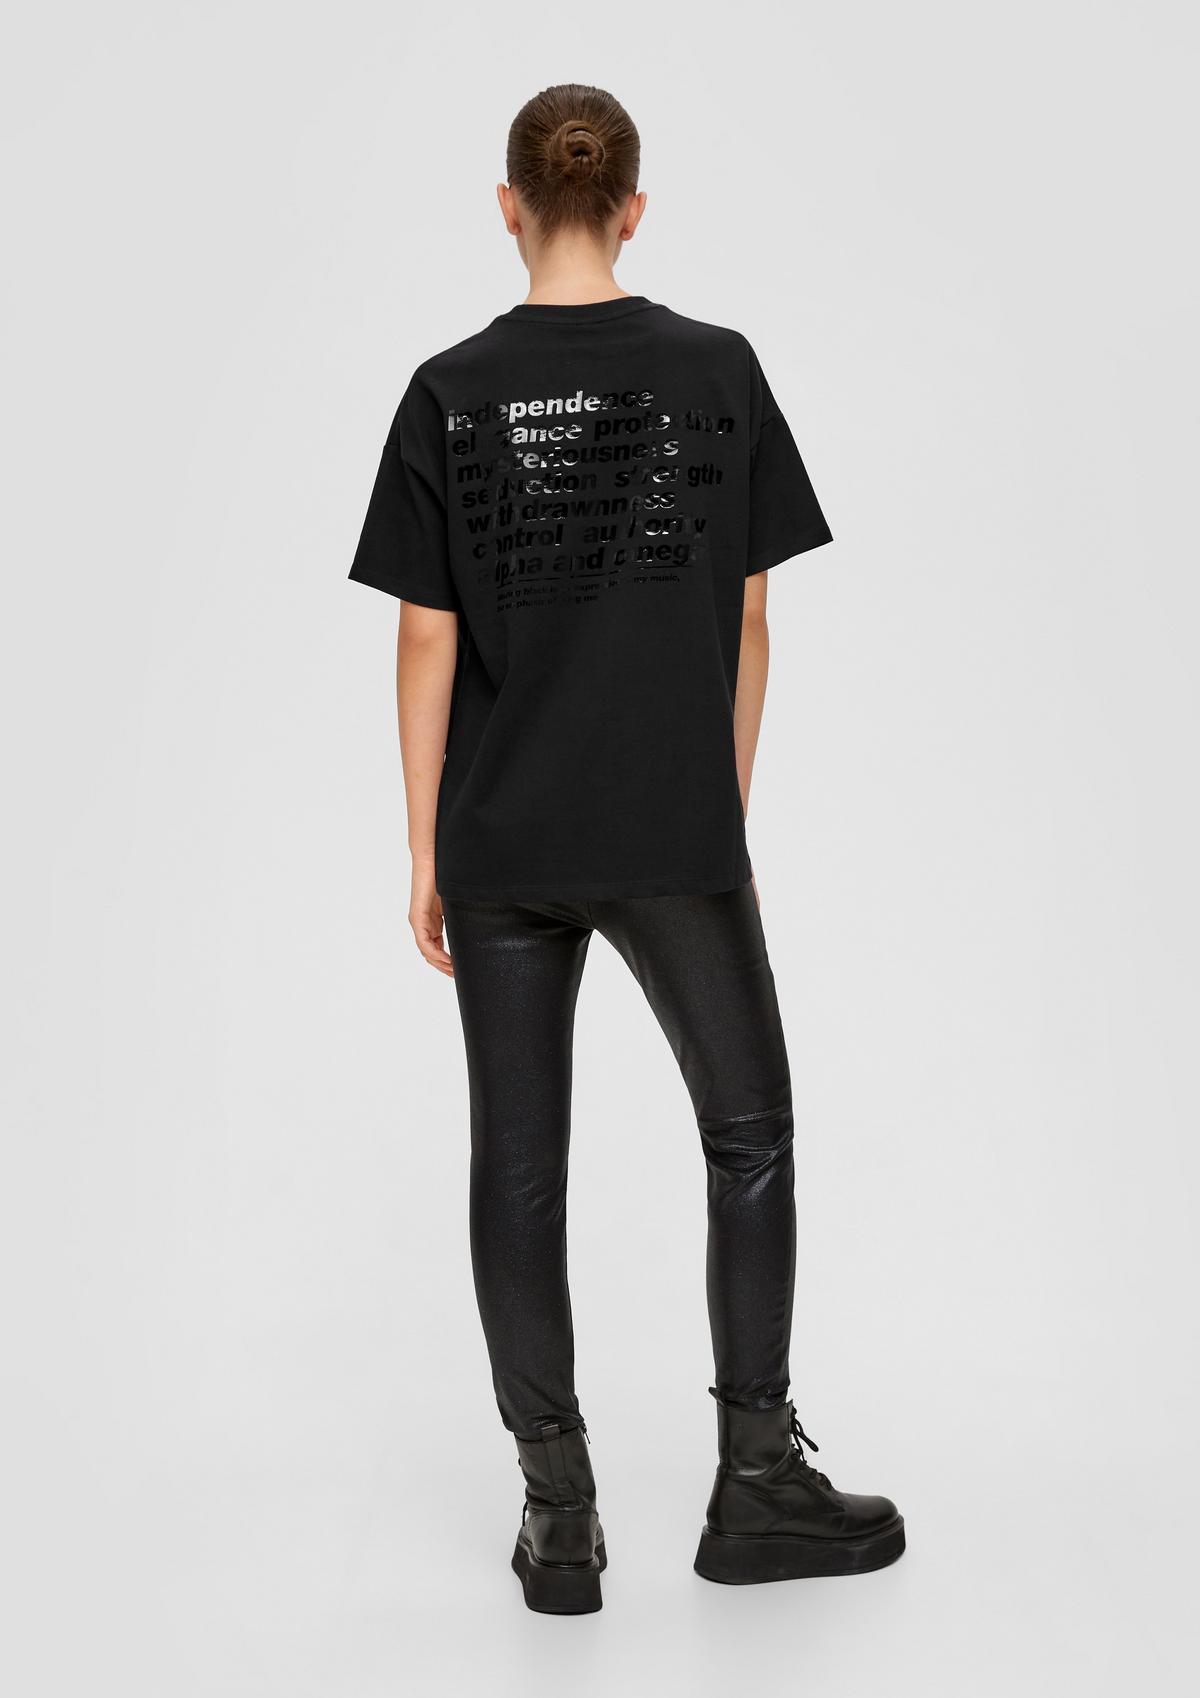 Rückenprint ELIF mit | x QS - schwarz Baumwoll-Shirt